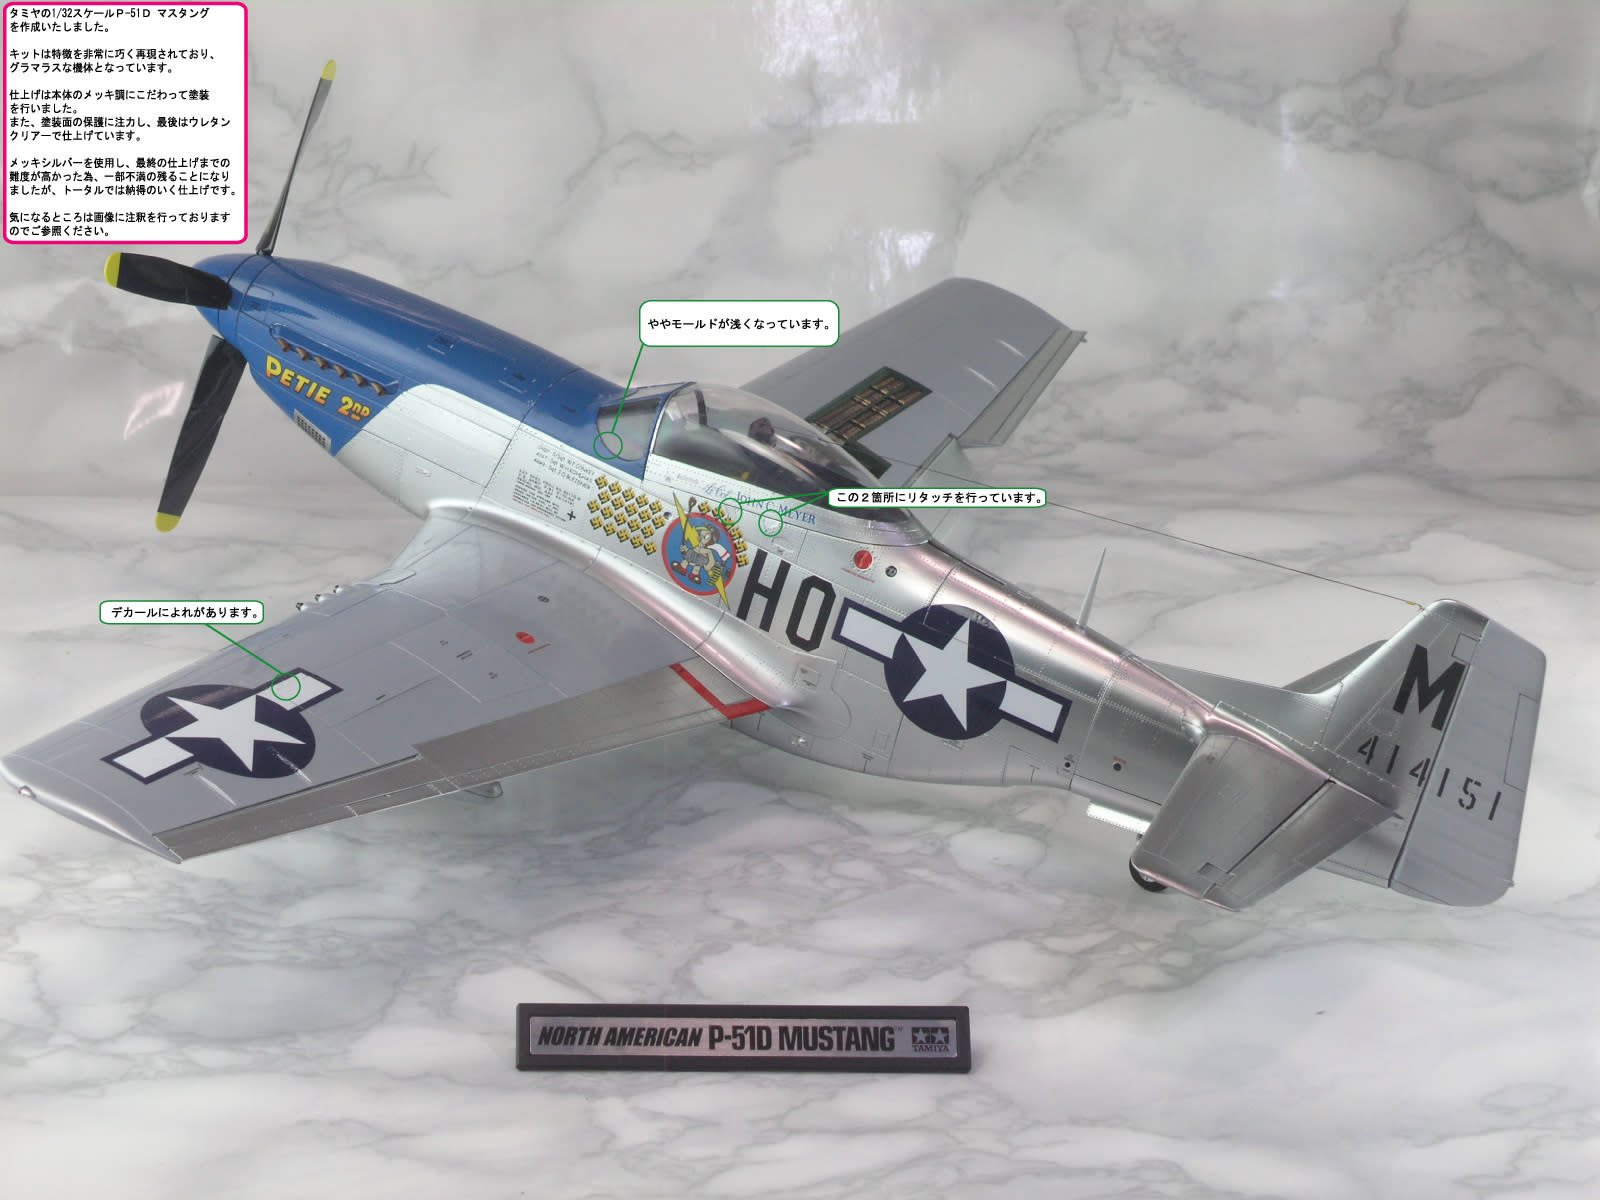 タミヤ 1/32 《ノースアメリカン P-51D MUSTANG マスタング》 【完成品】 - kitkitの模型ブログ